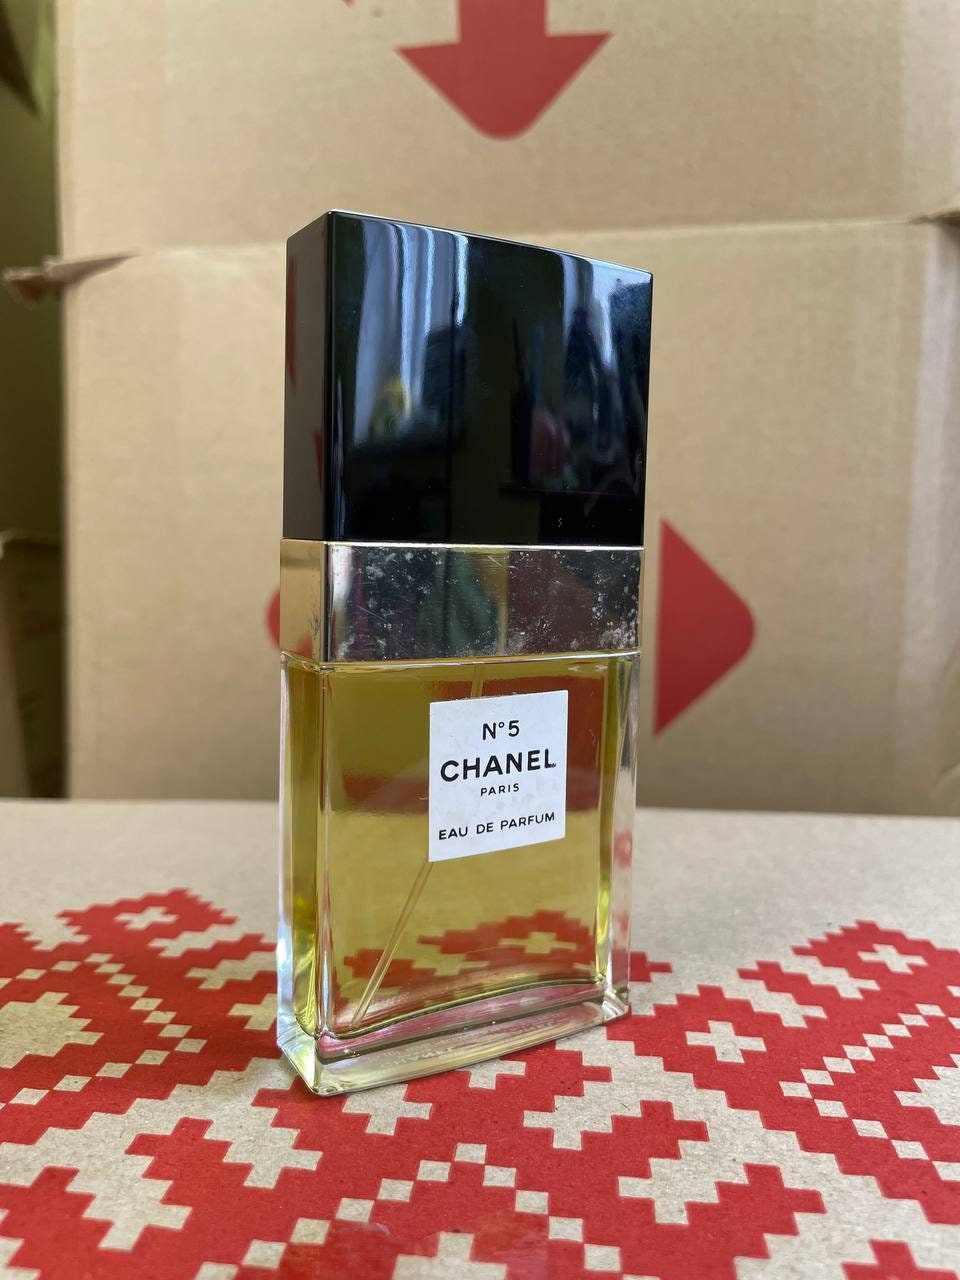 CHANEL Big Sample Perfume Gift Set , I bought this